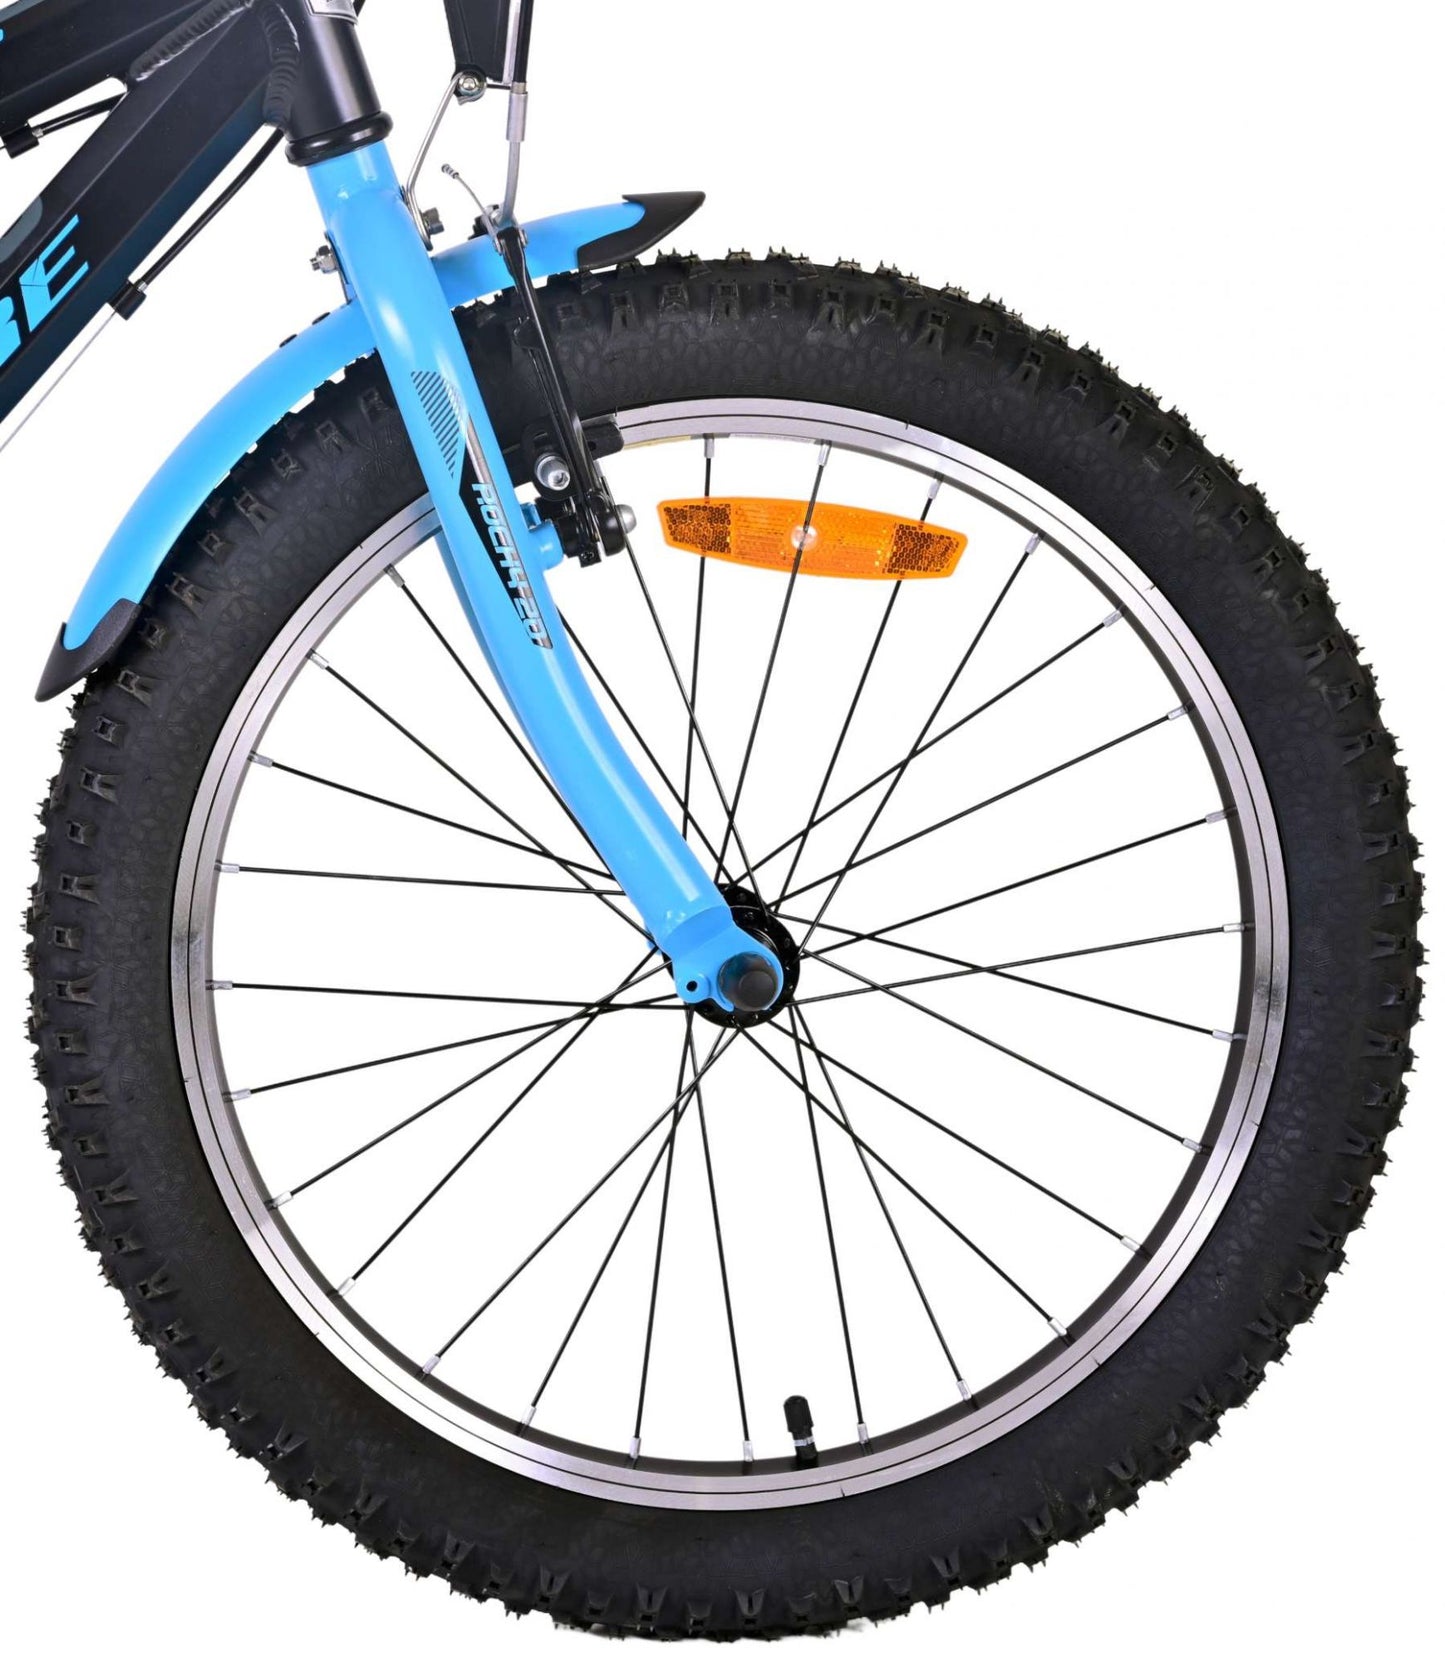 Bicicleta para niños de Volare Rocky - 20 pulgadas - Black Black - 85% ensamblado - 6 velocidades - Colección Prime